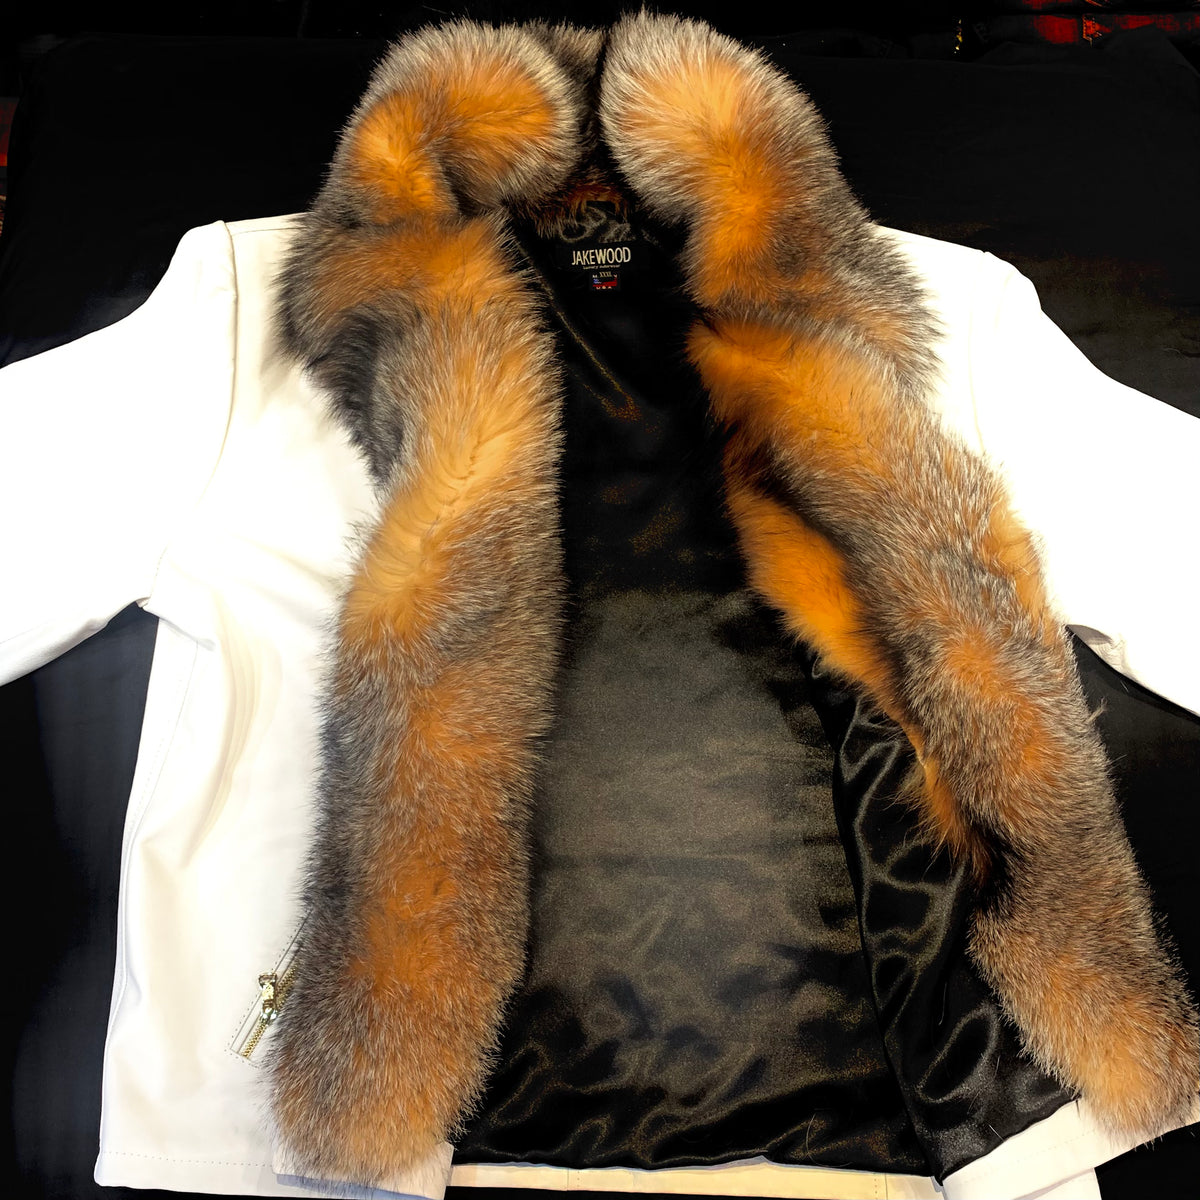 Kashani Men's White LambSkin Red Fox Collar Biker Jacket - Dudes Boutique